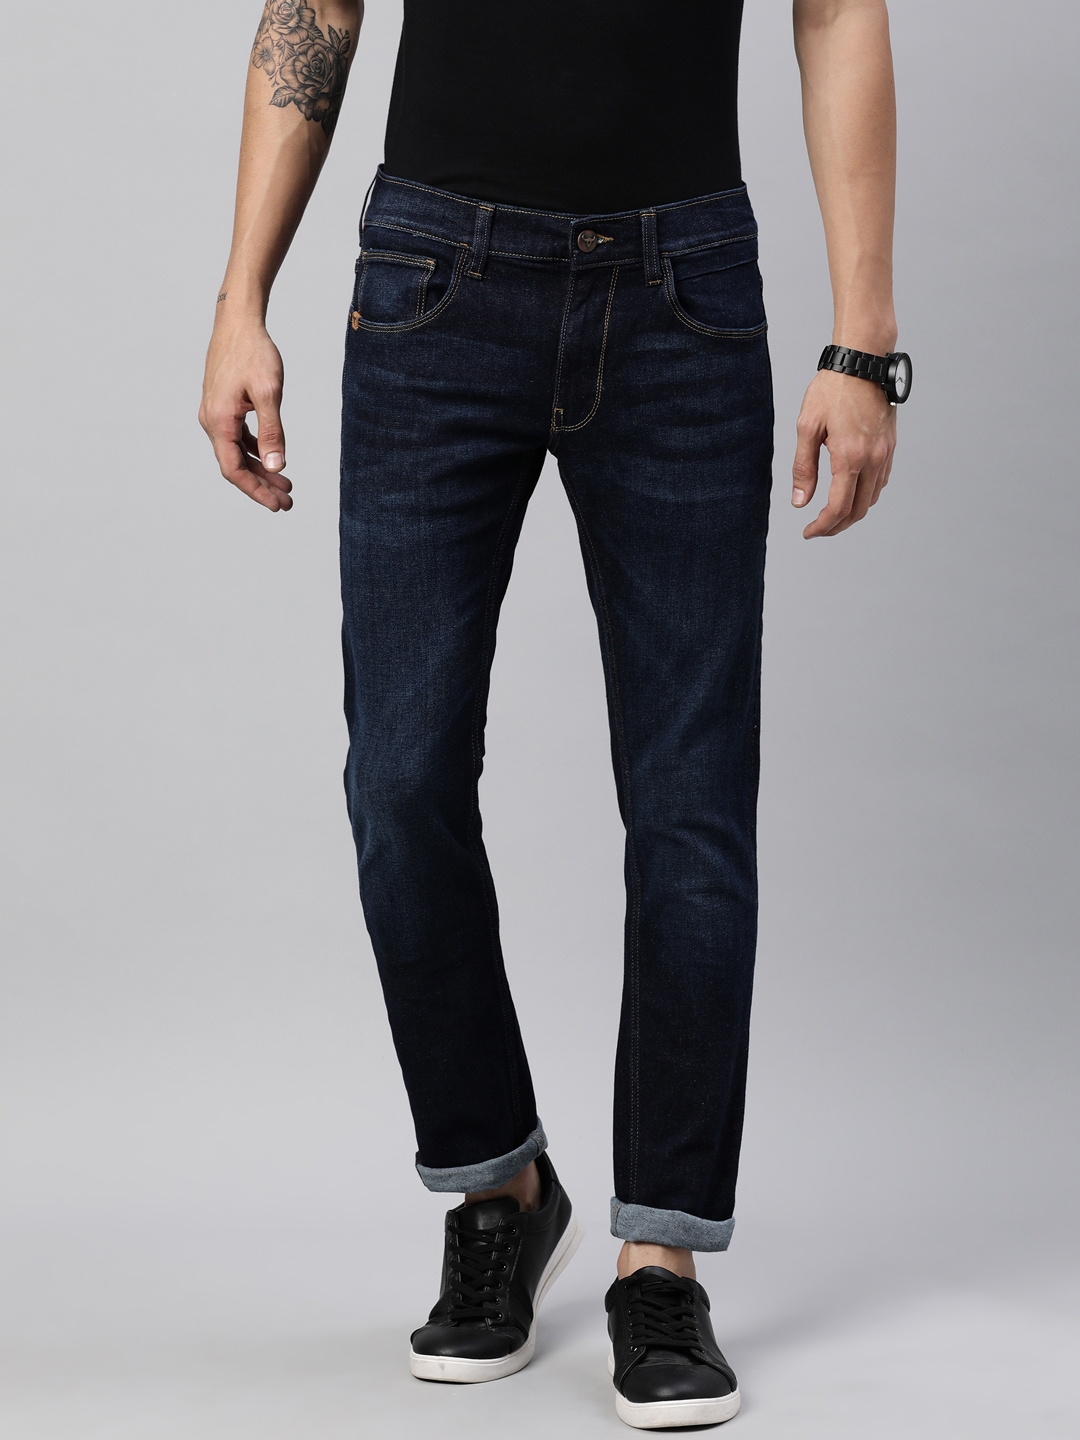 American Bull | American Bull Mens Solid Full length Denim Jeans 0